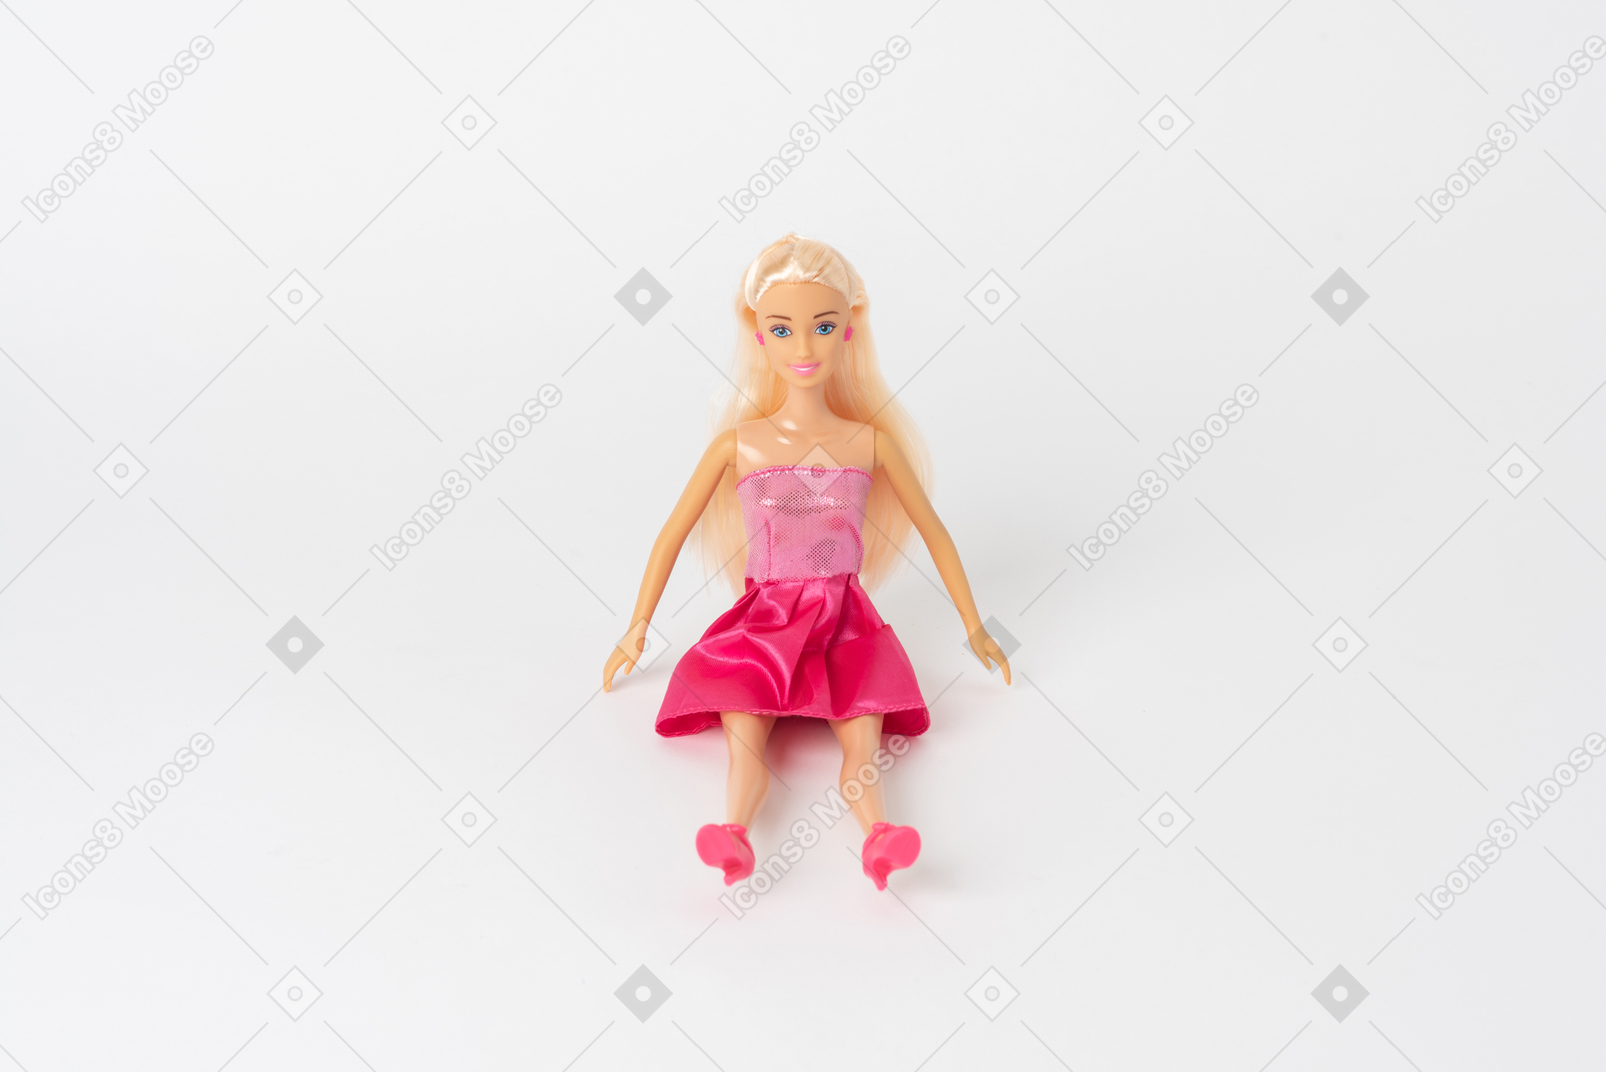 빛나는 핑크 드레스와 핑크 하이힐에 아름다운 바비 인형 앉아 평범한 흰색 배경에 대해 격리